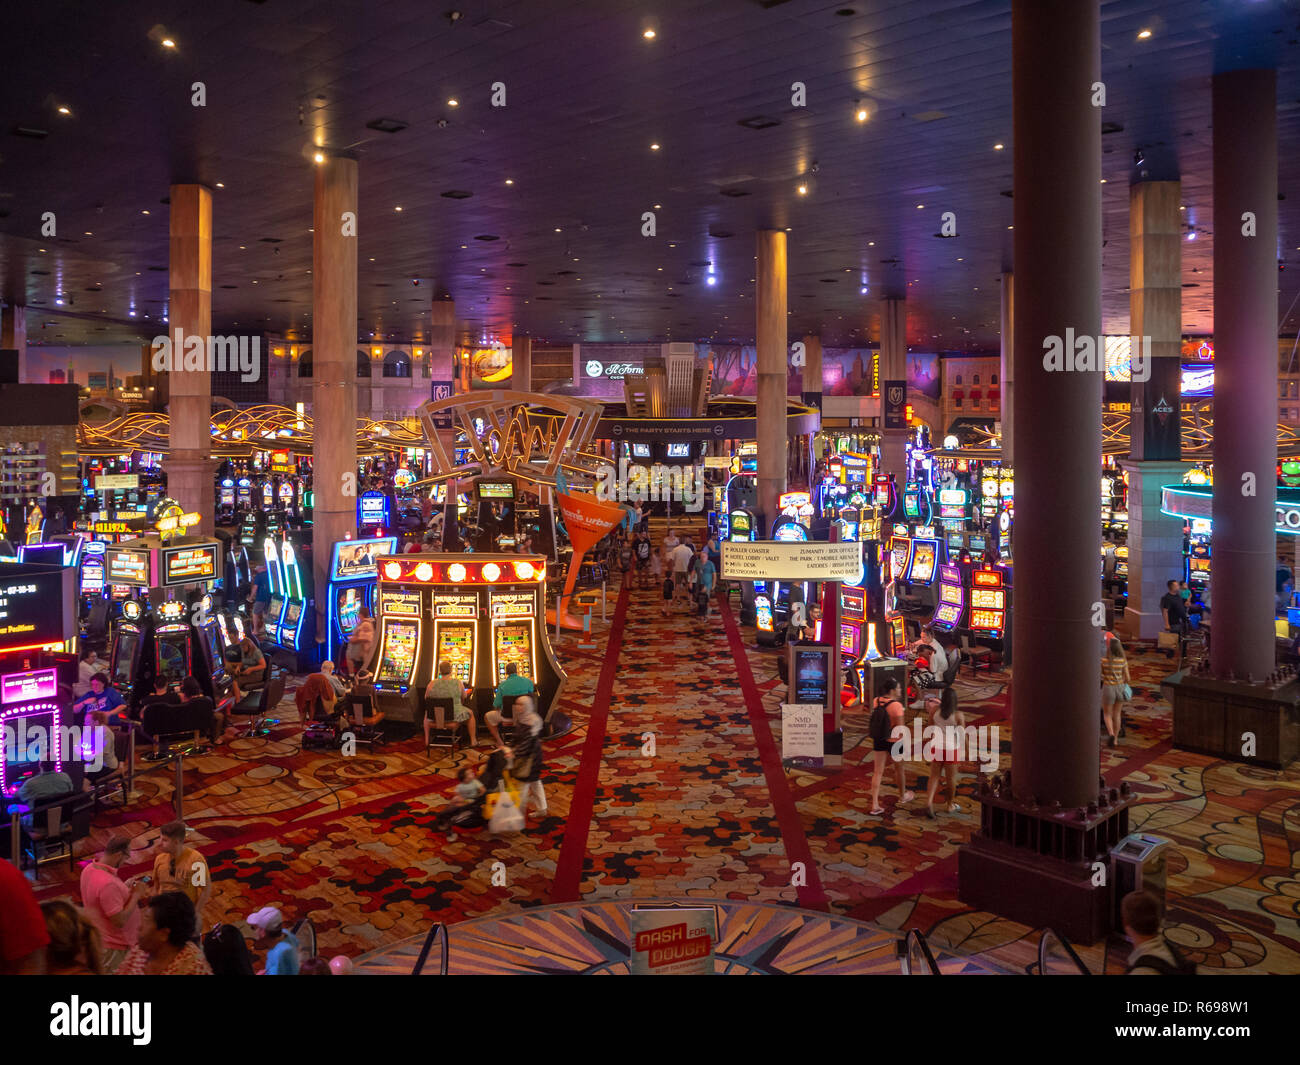 File:Paris Las Vegas interior.JPG - Wikipedia